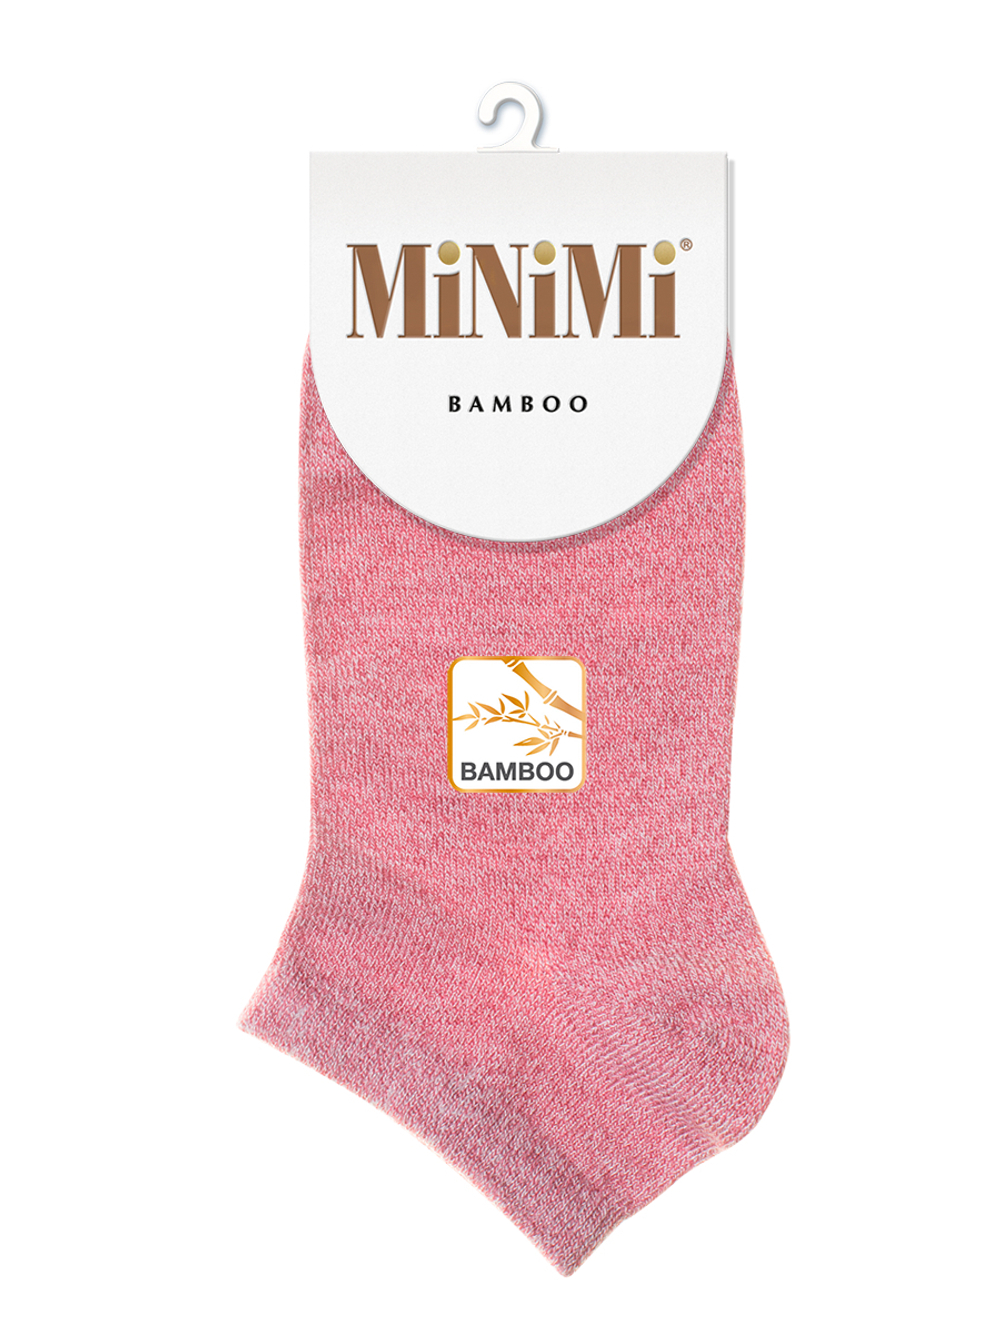 MiNiMi BAMBOO 2203 носки укороченные